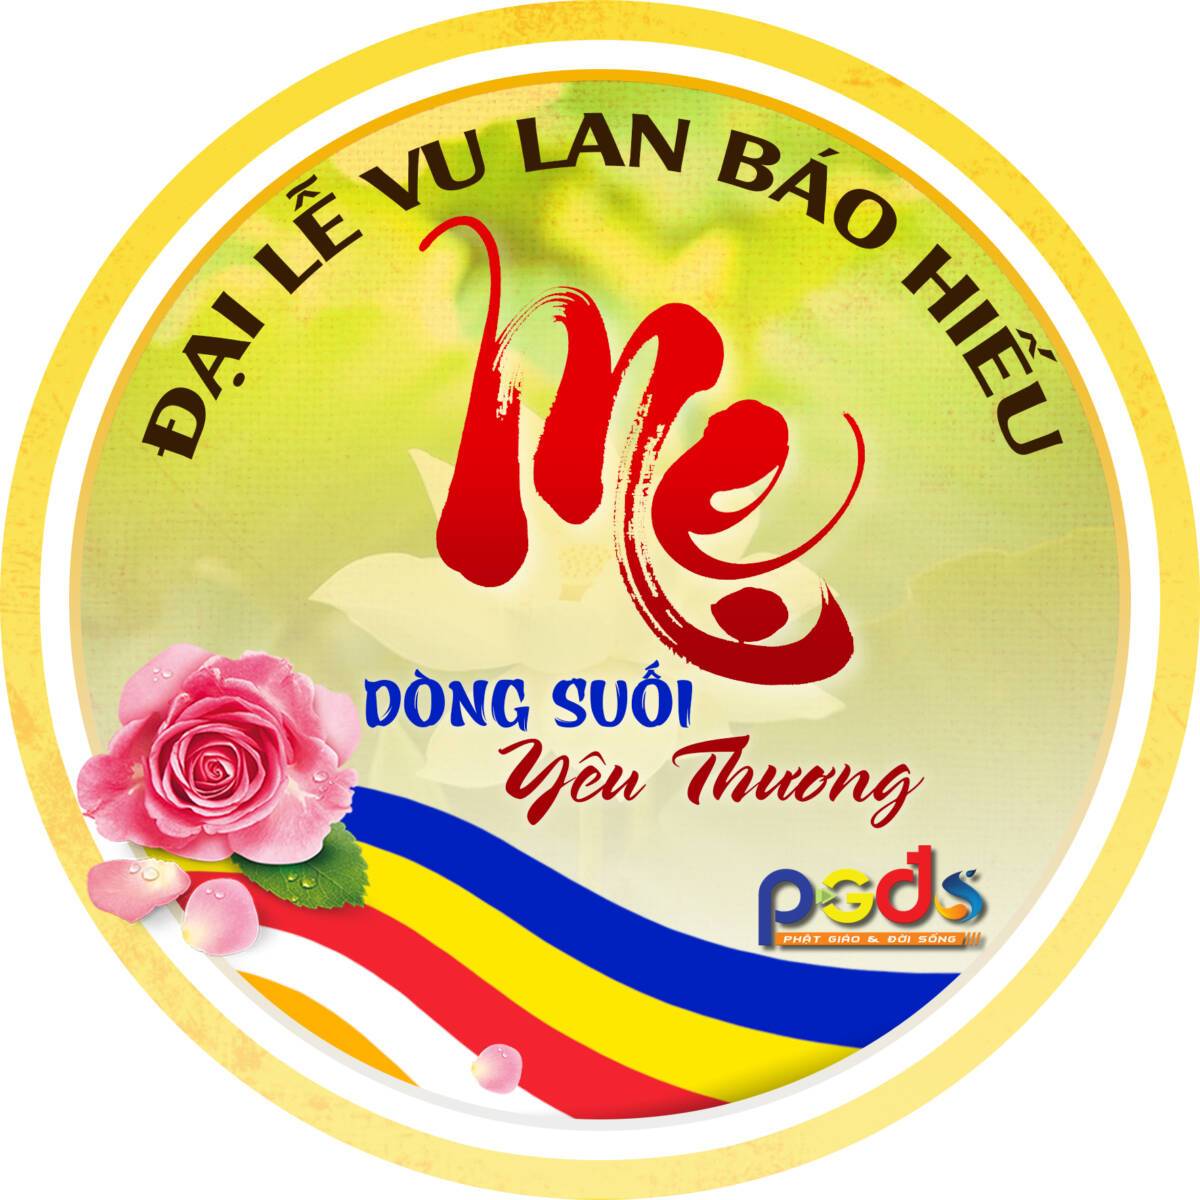 Vu Lan báo hiếu là nét đẹp văn hóa truyền thống của người Việt  Văn hóa   Vietnam VietnamPlus